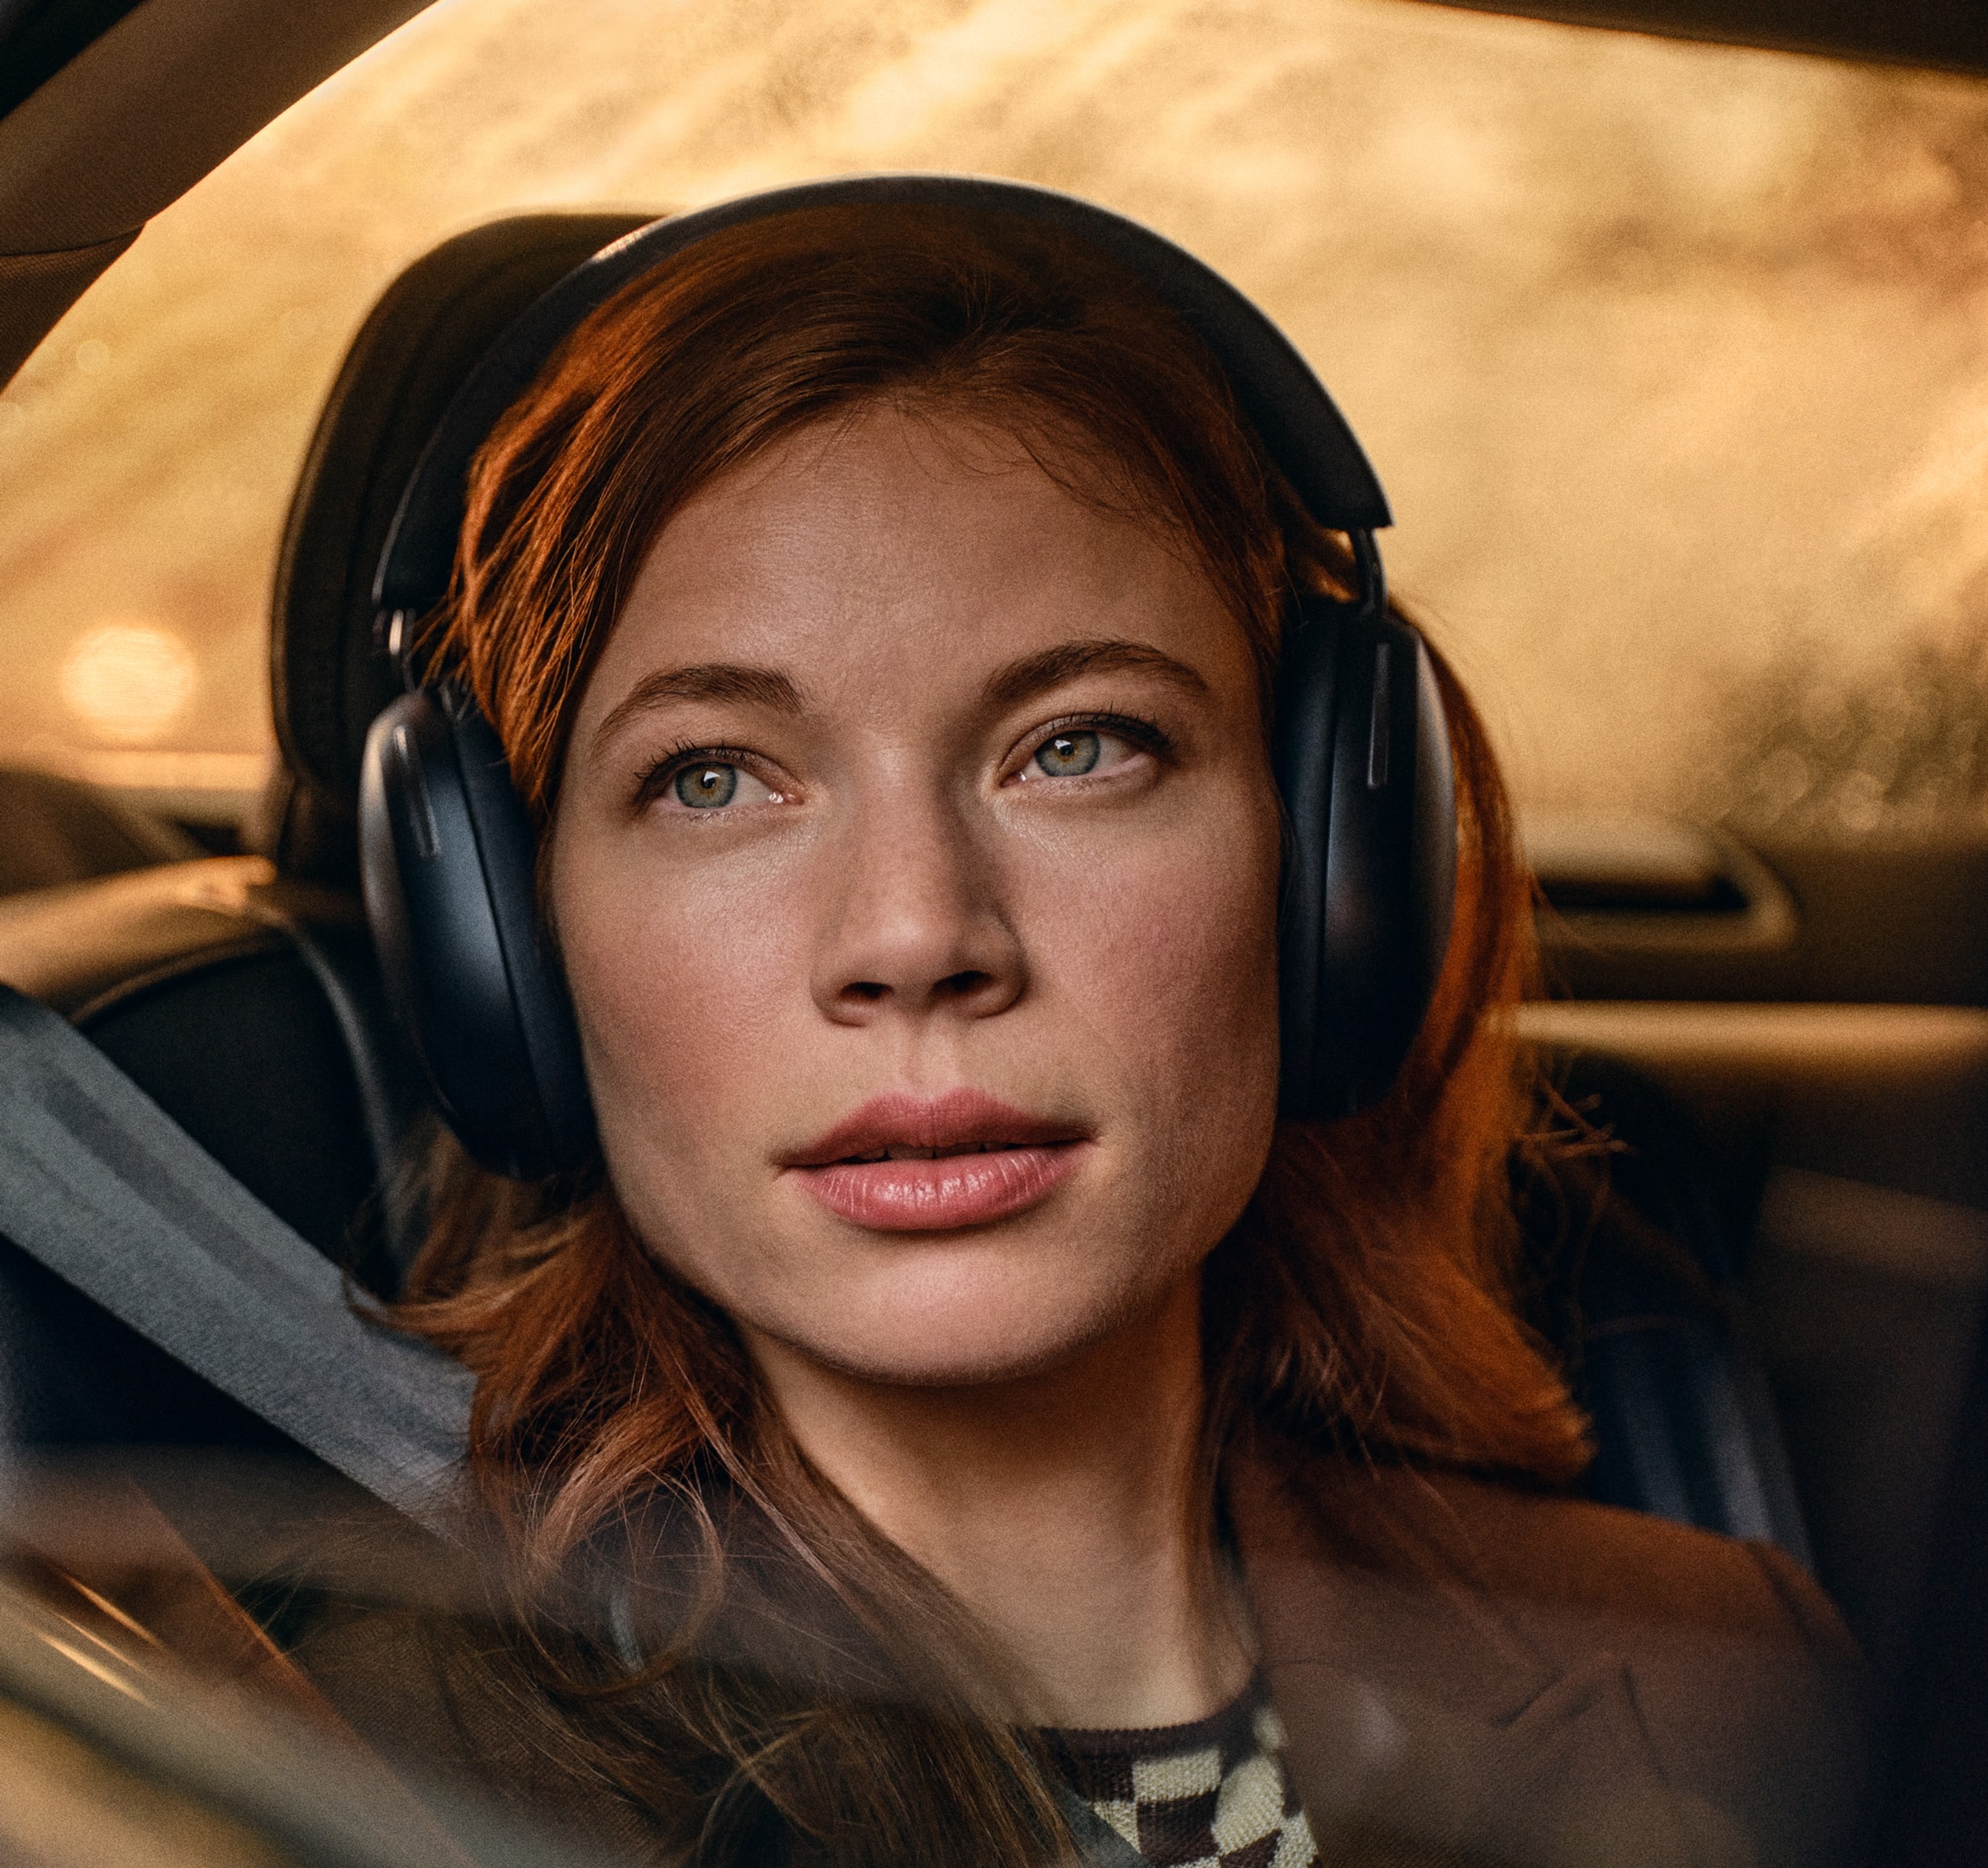 Kvinna som åker bil och har på sig svarta Sonos Ace-hörlurar